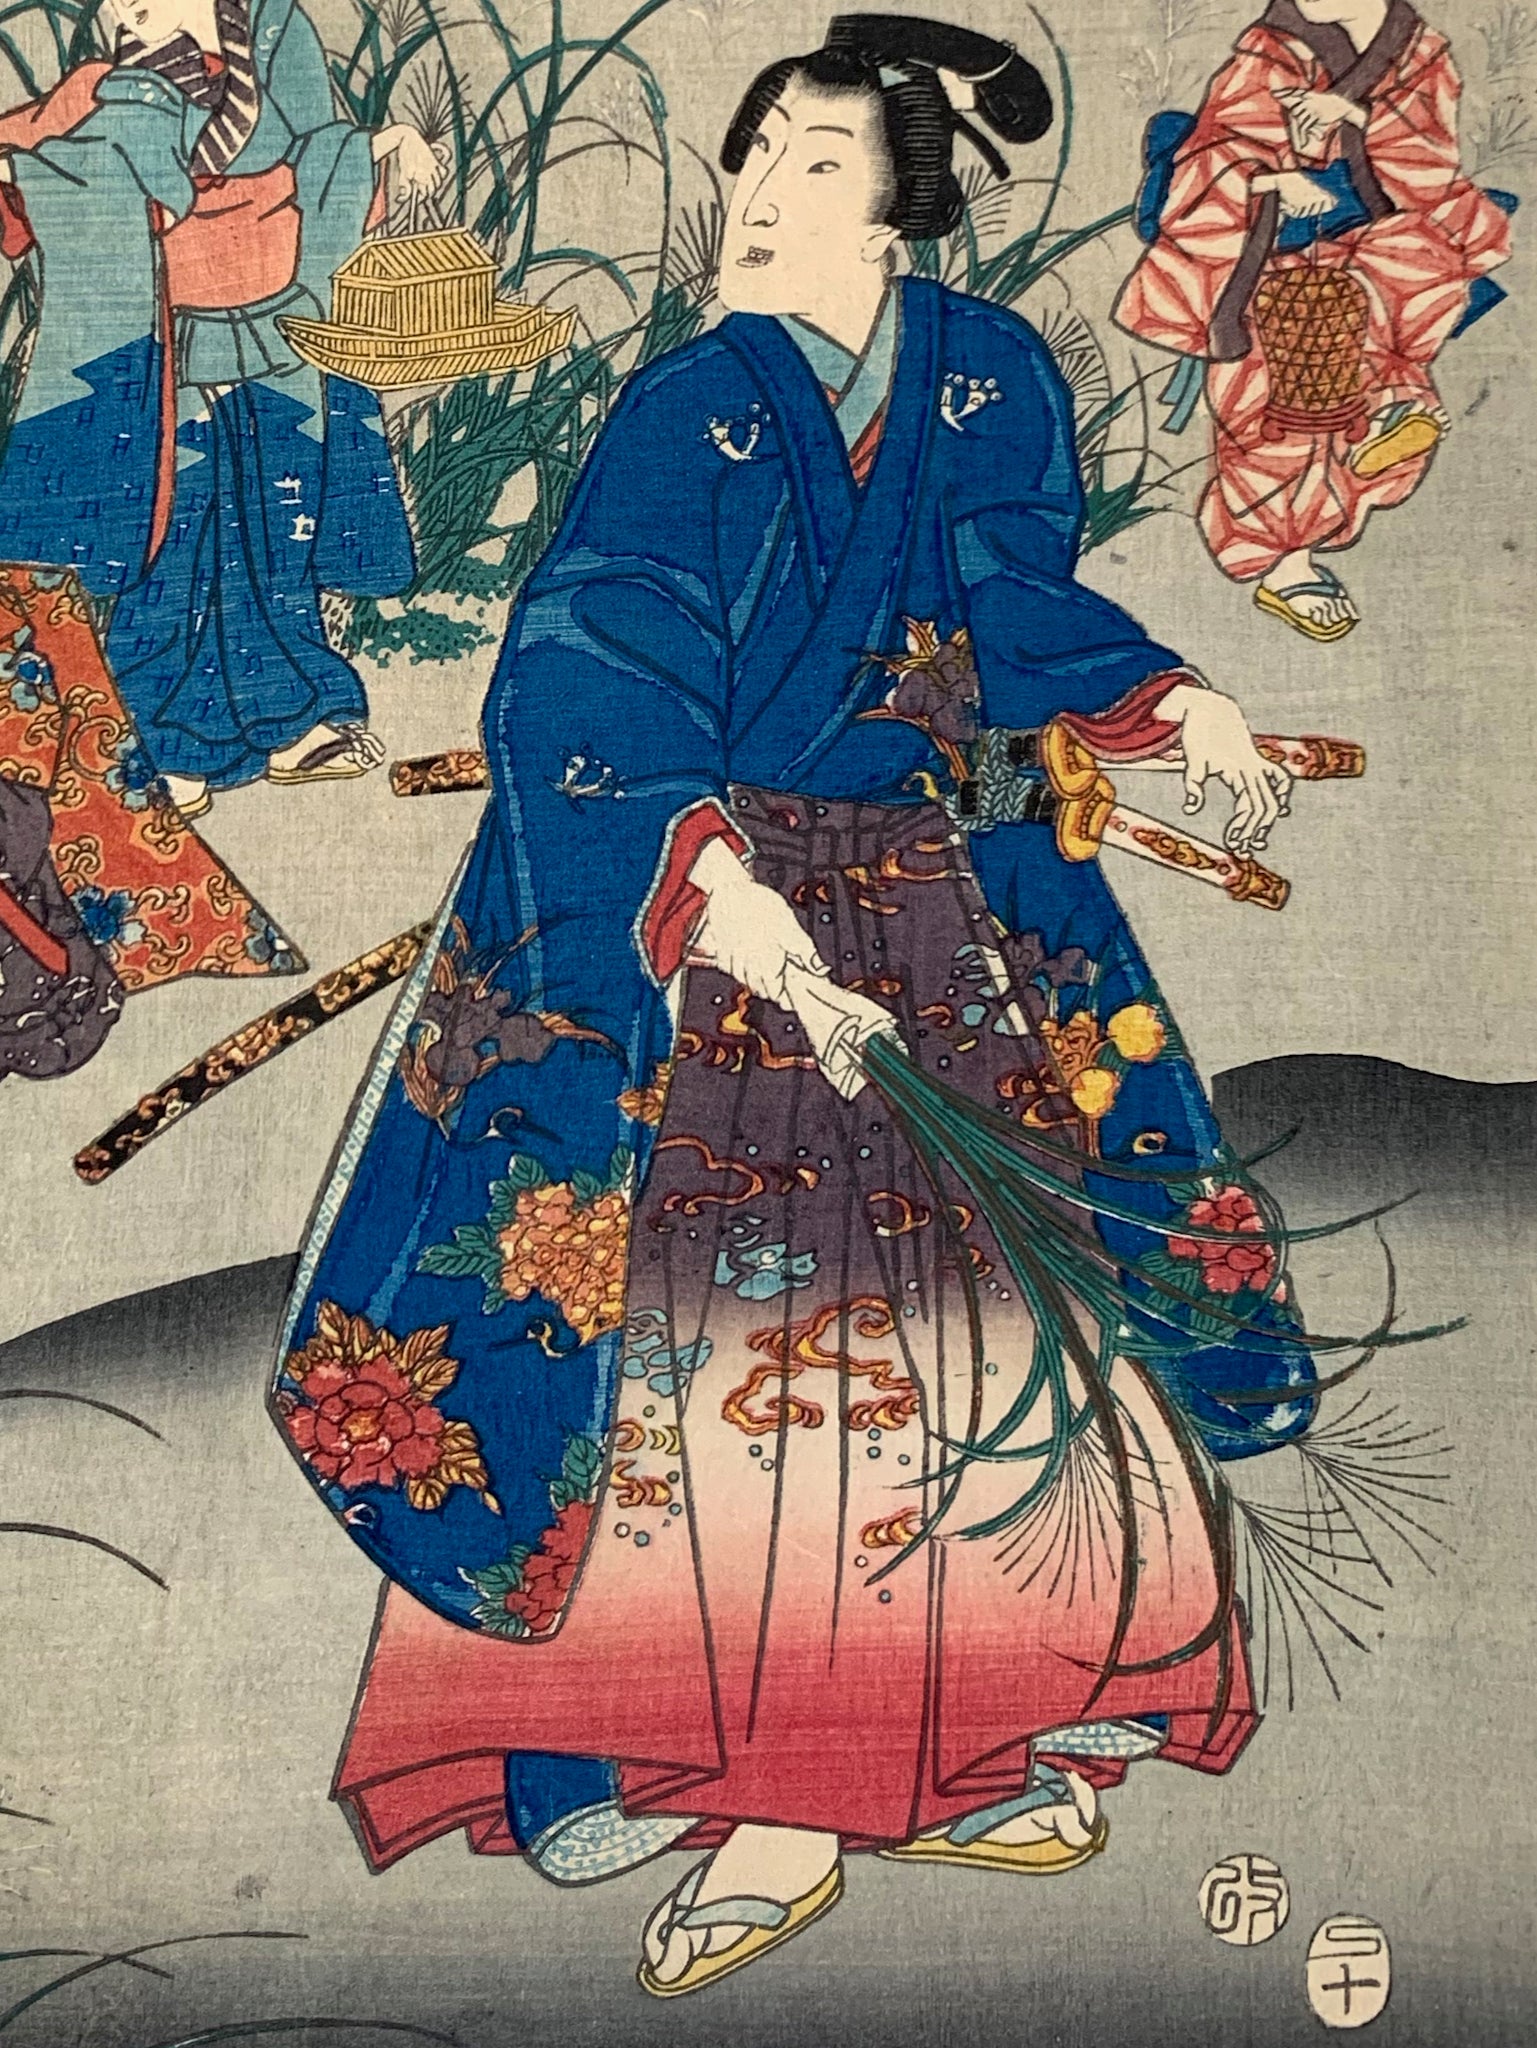 estampe japonaise homme en kimono avec femmes et enfant cueillent des herbes graminées une nuit d'automne, gros plan sur l'homme